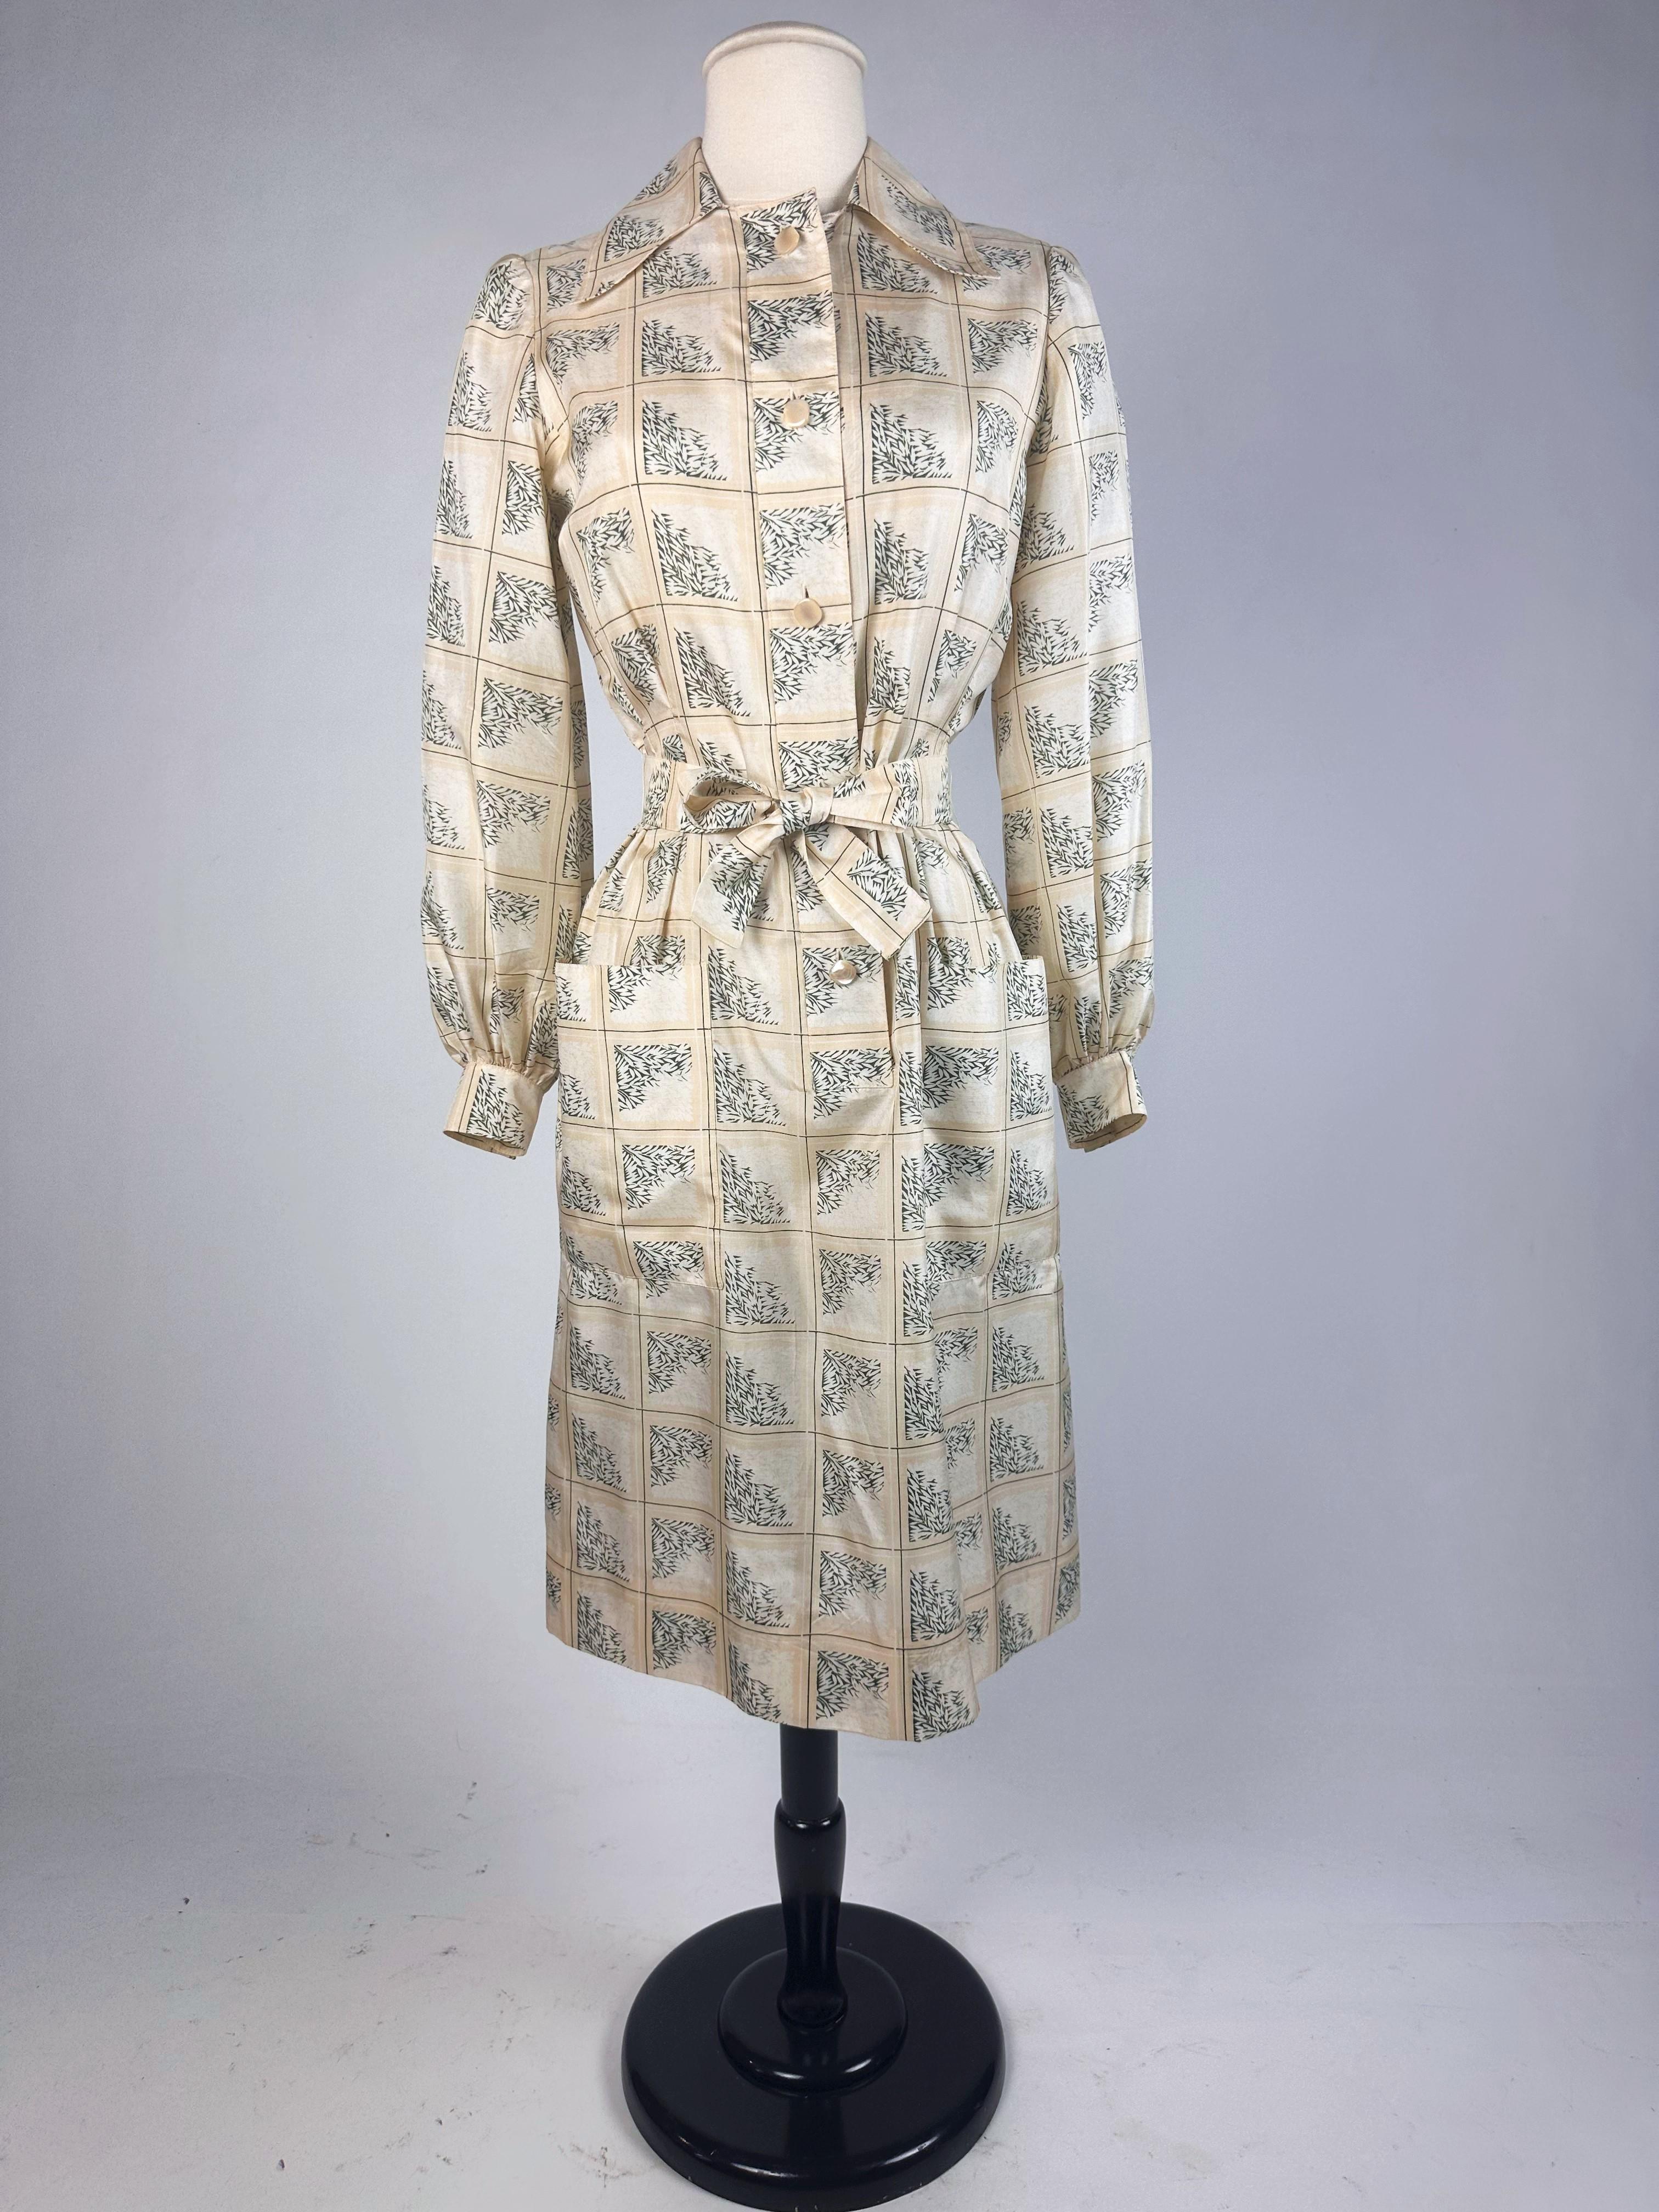 Blouse dress in printed taffeta by Gérard Pipart for Nina Ricci Circa 1985 5